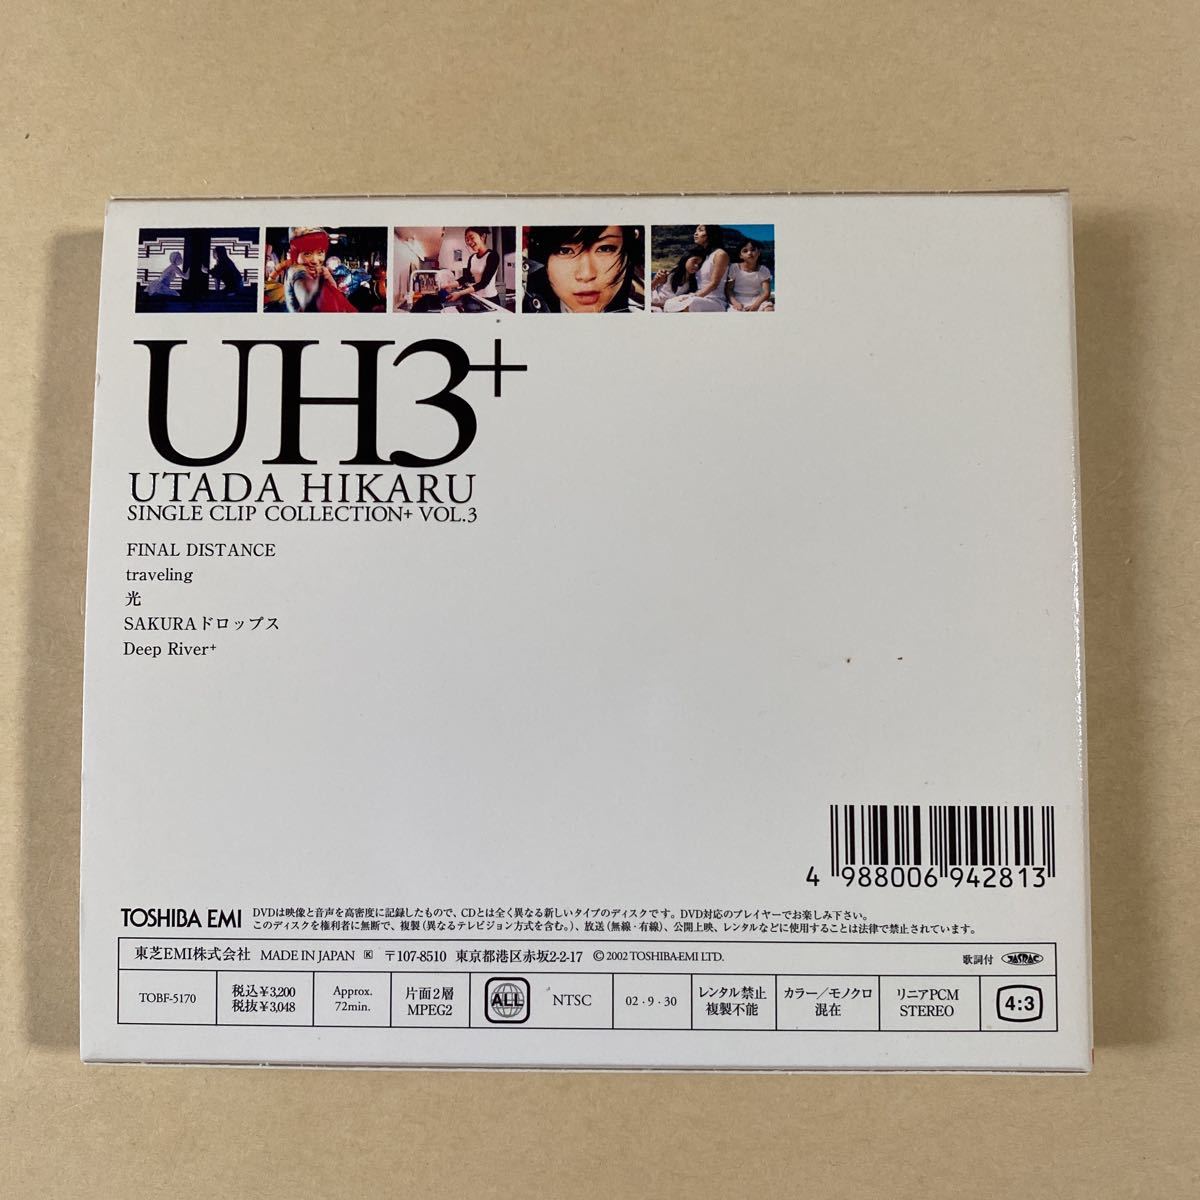 宇多田ヒカル 1DVD「 UH3+ 」_画像2